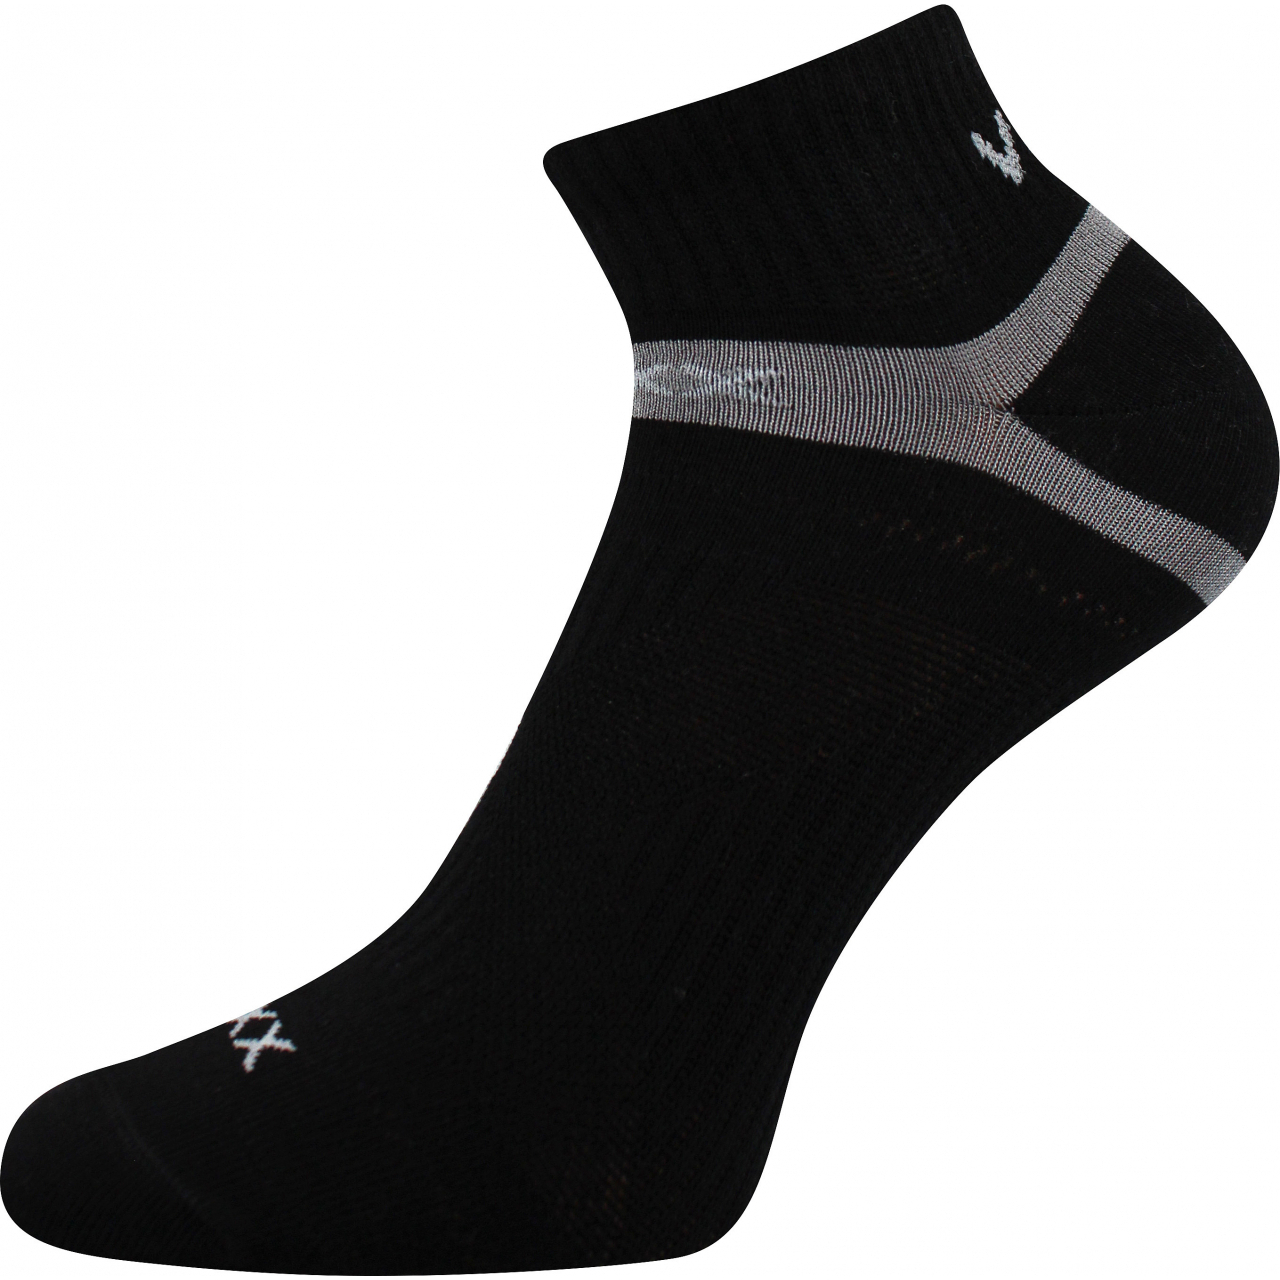 Ponožky klasické unisex Voxx Rex 14 - černé, 39-42